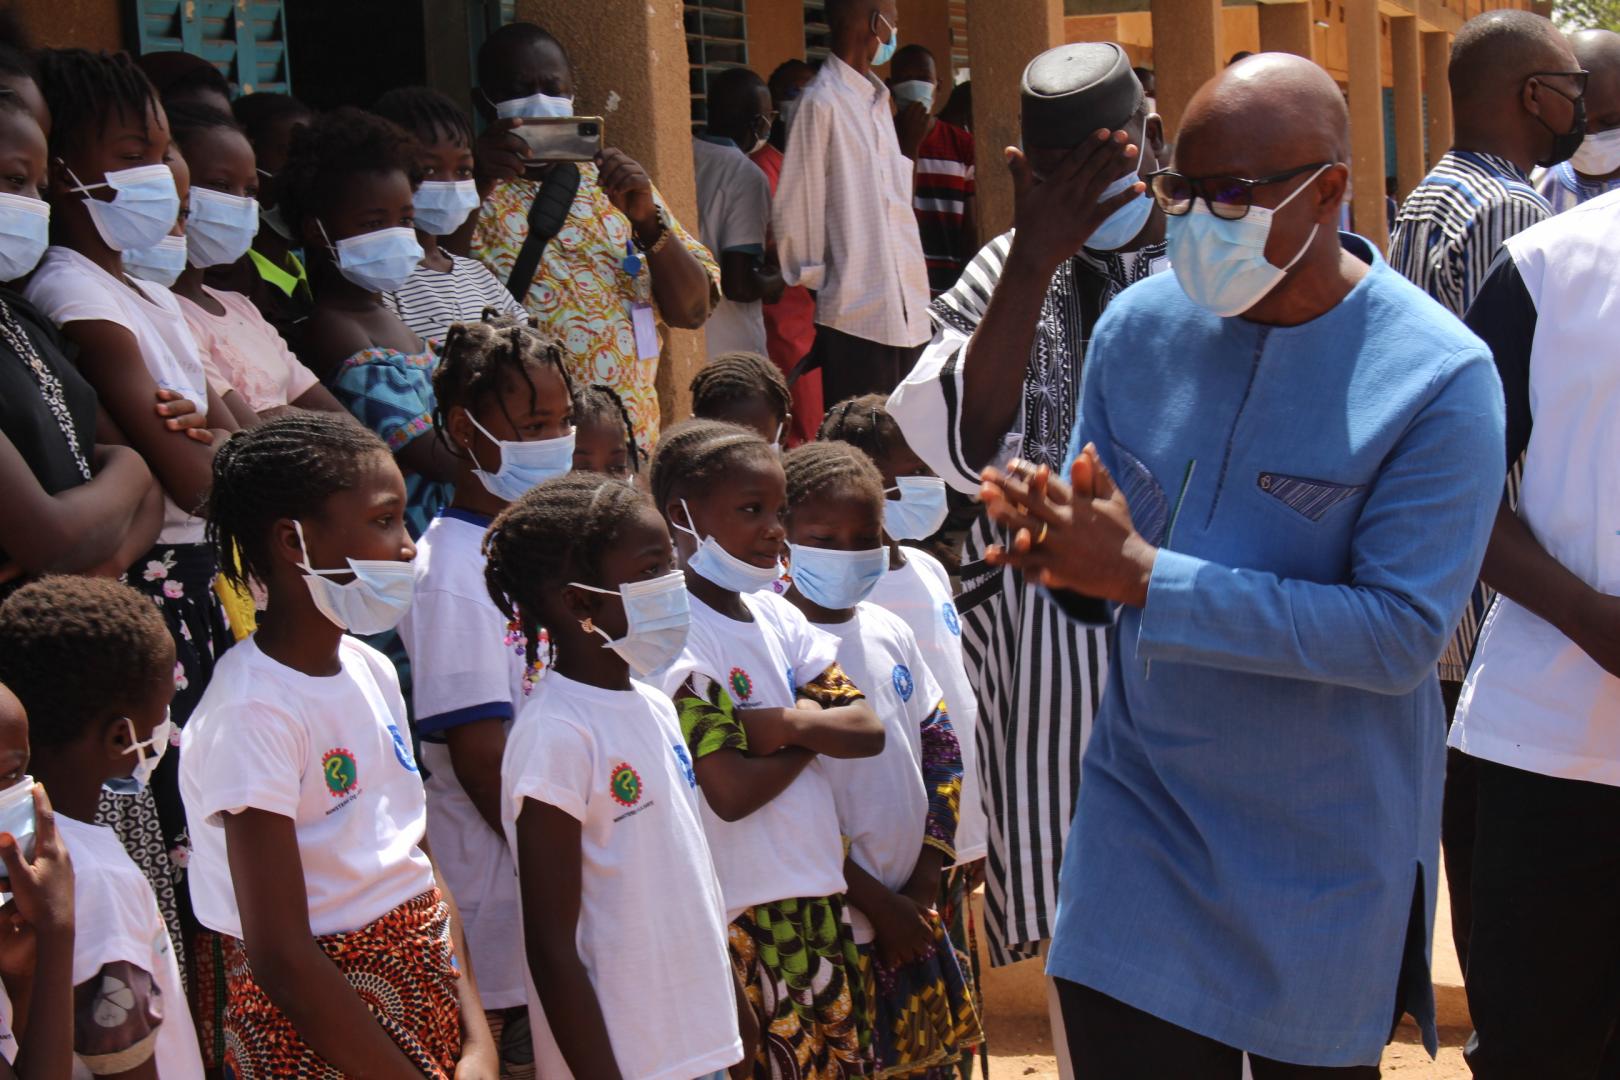 Le Ministre de la santé et de l’hygiène publique, Dr Kargougou, salue les enfants  en attente de recevoir leur dose de vaccin, gardasil4 